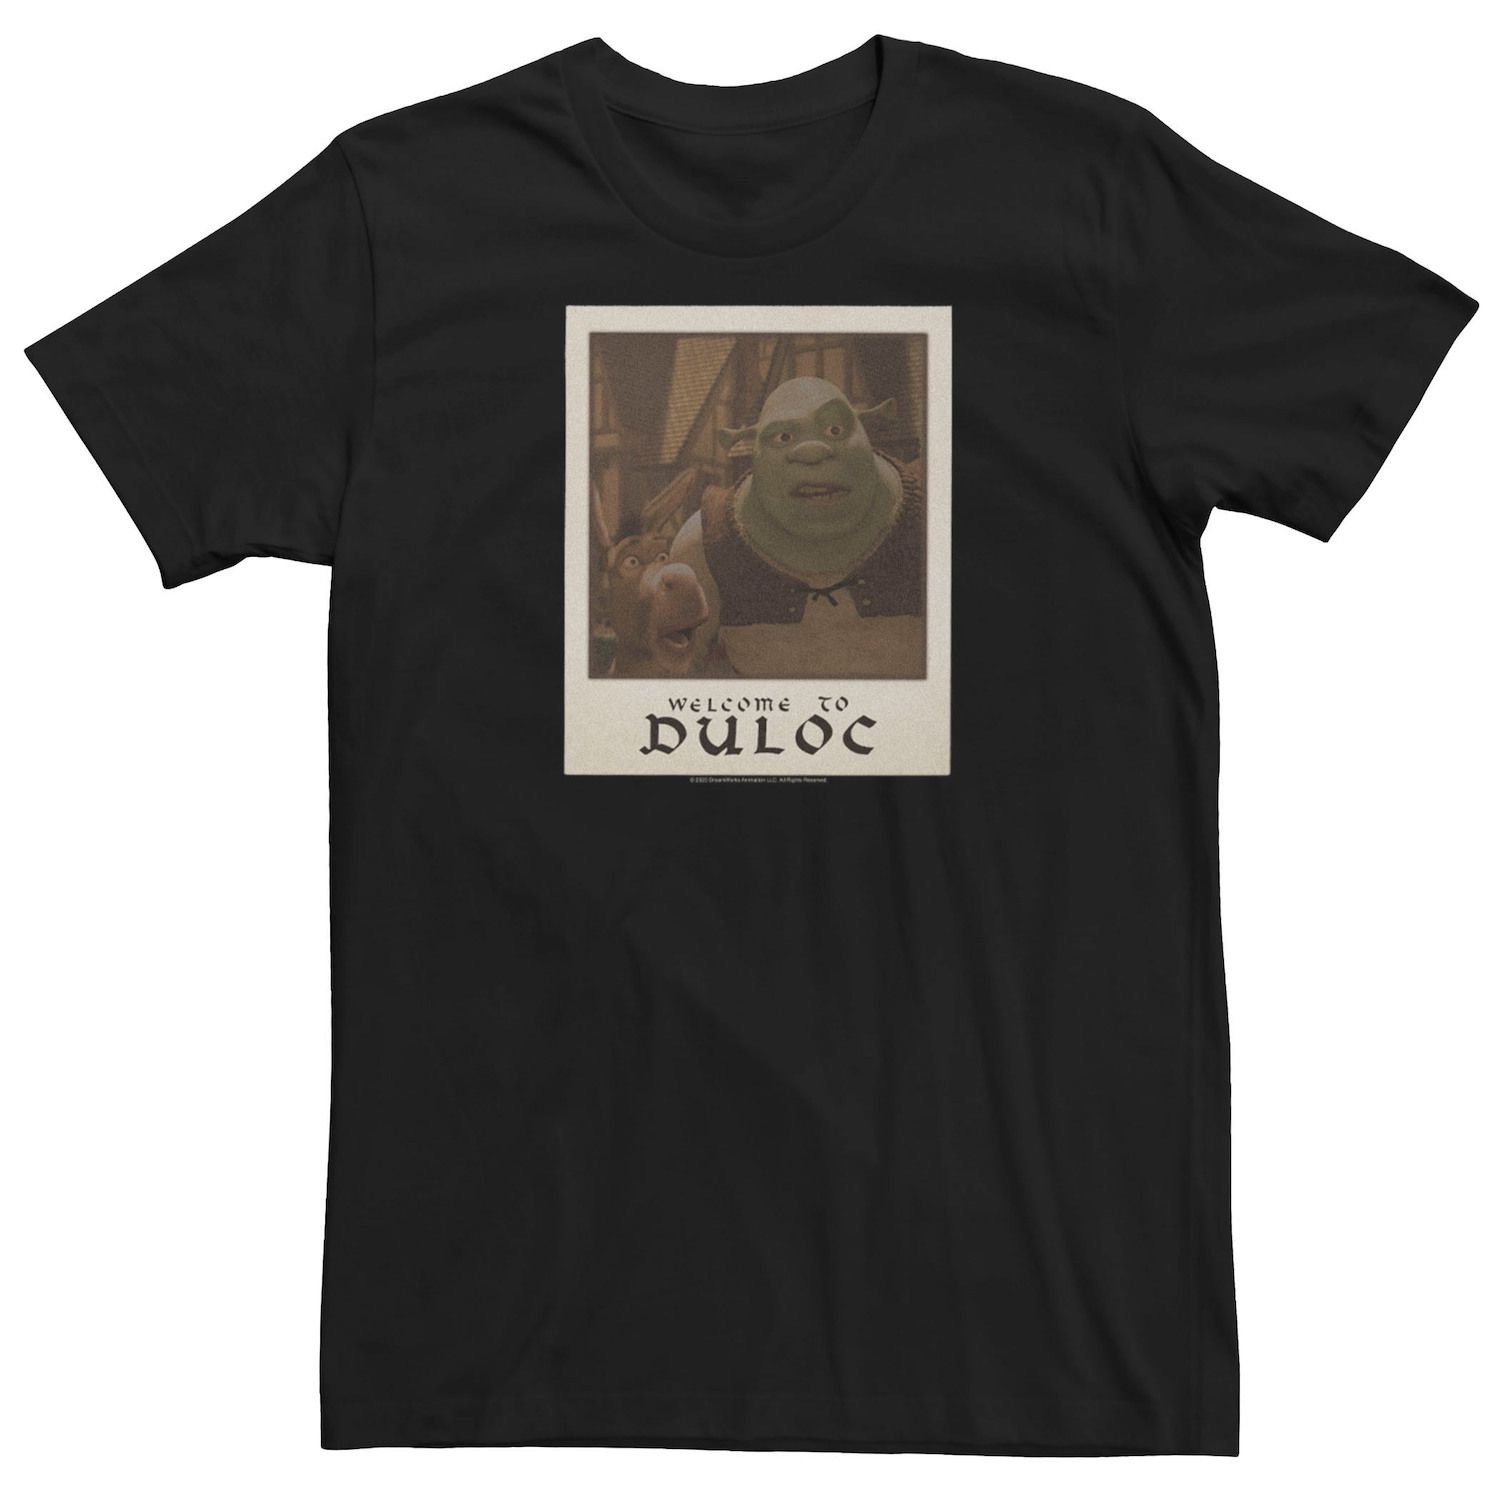 Мужская футболка с портретом Shrek & Donkey Welcome To Duloc Licensed Character